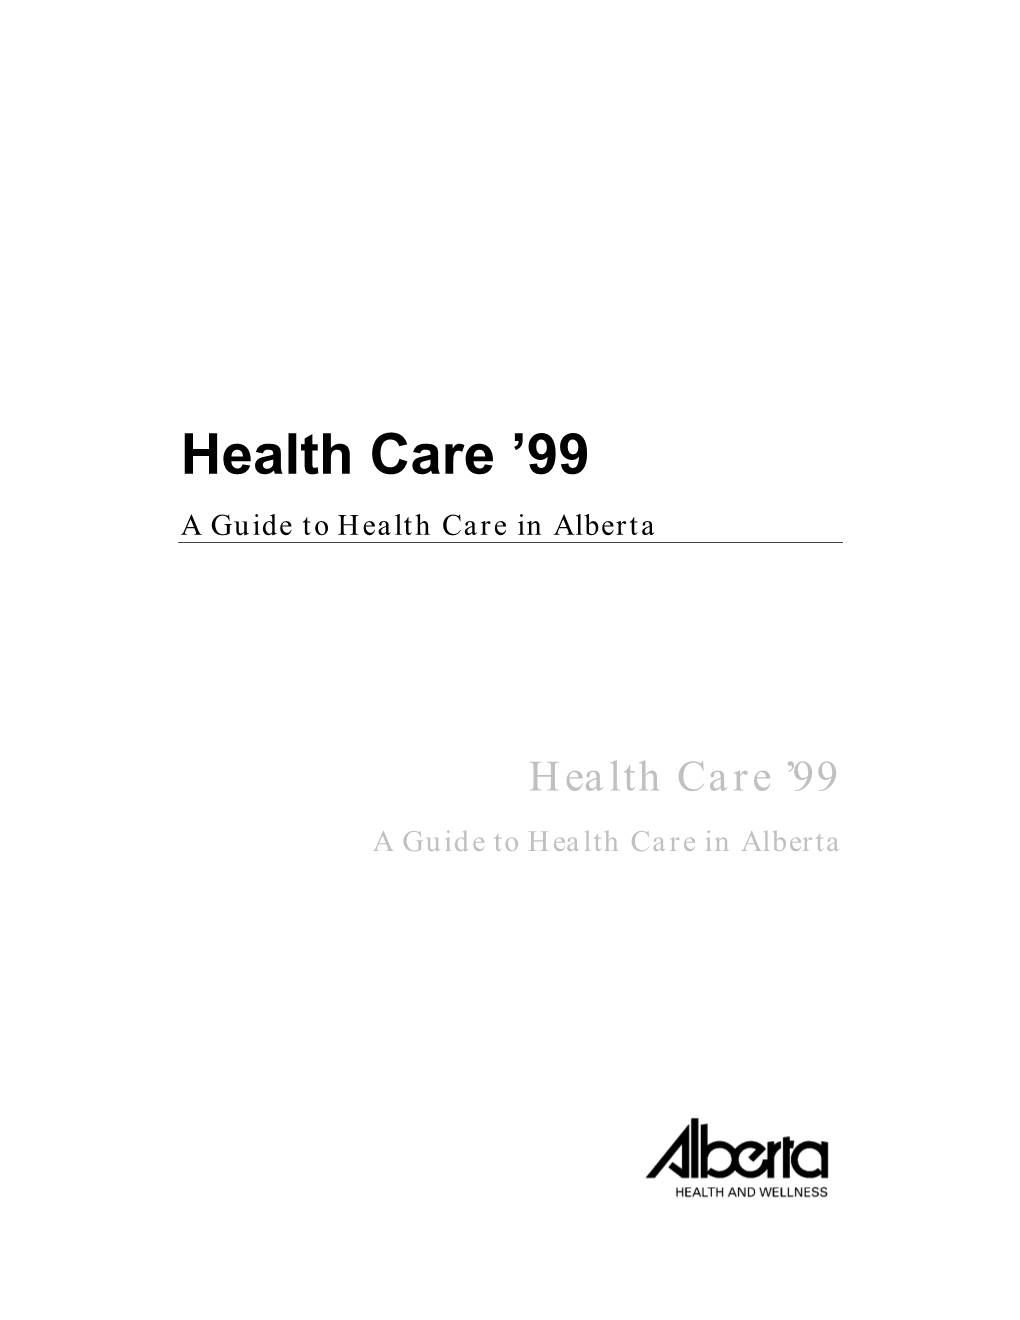 Health Care ’99 a Guide to Health Care in Alberta